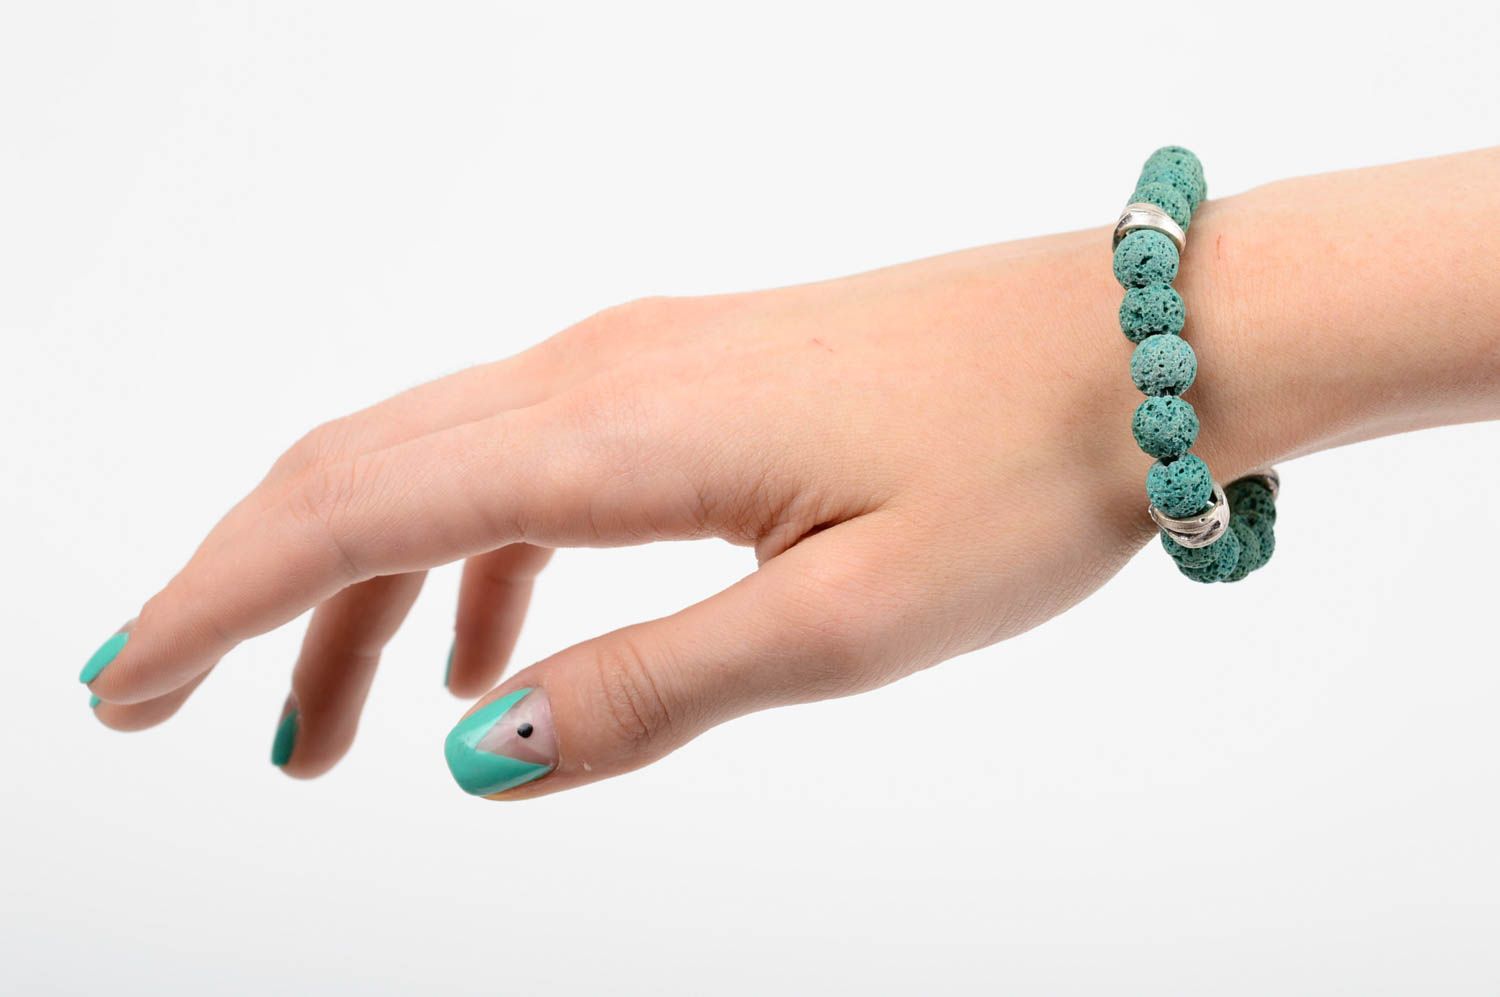 Handmade stylish bracelet female wrist jewelry accessories made of vulcanite photo 3